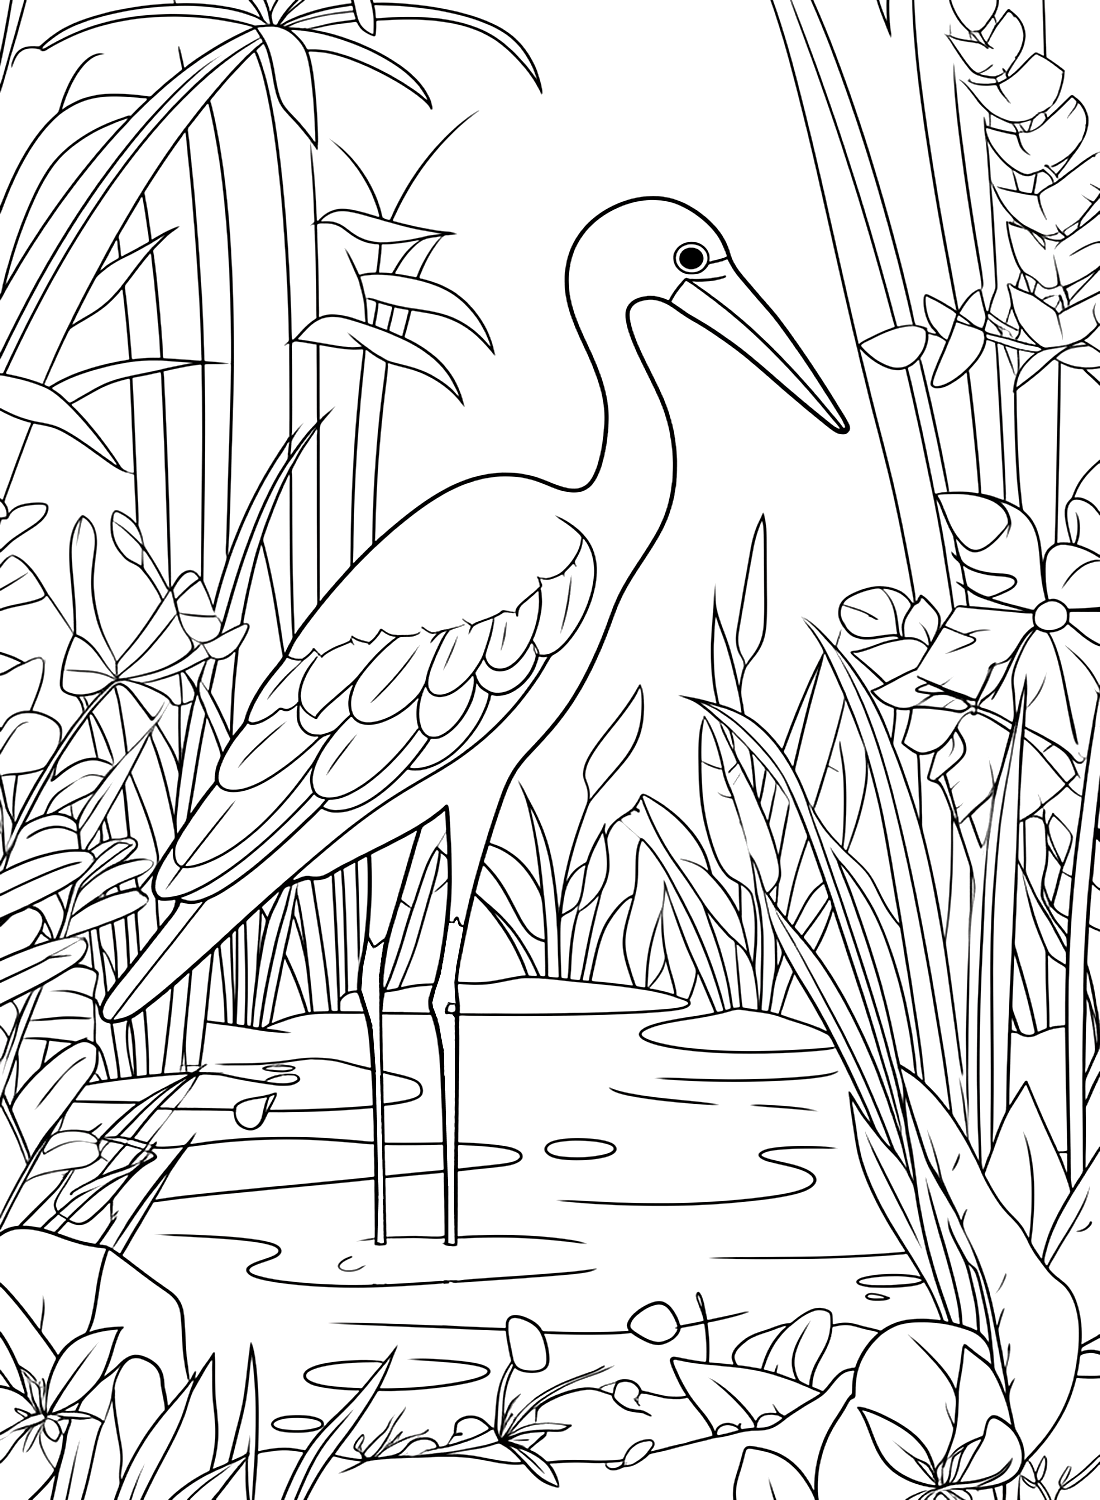 Storch im Sumpf von Stork